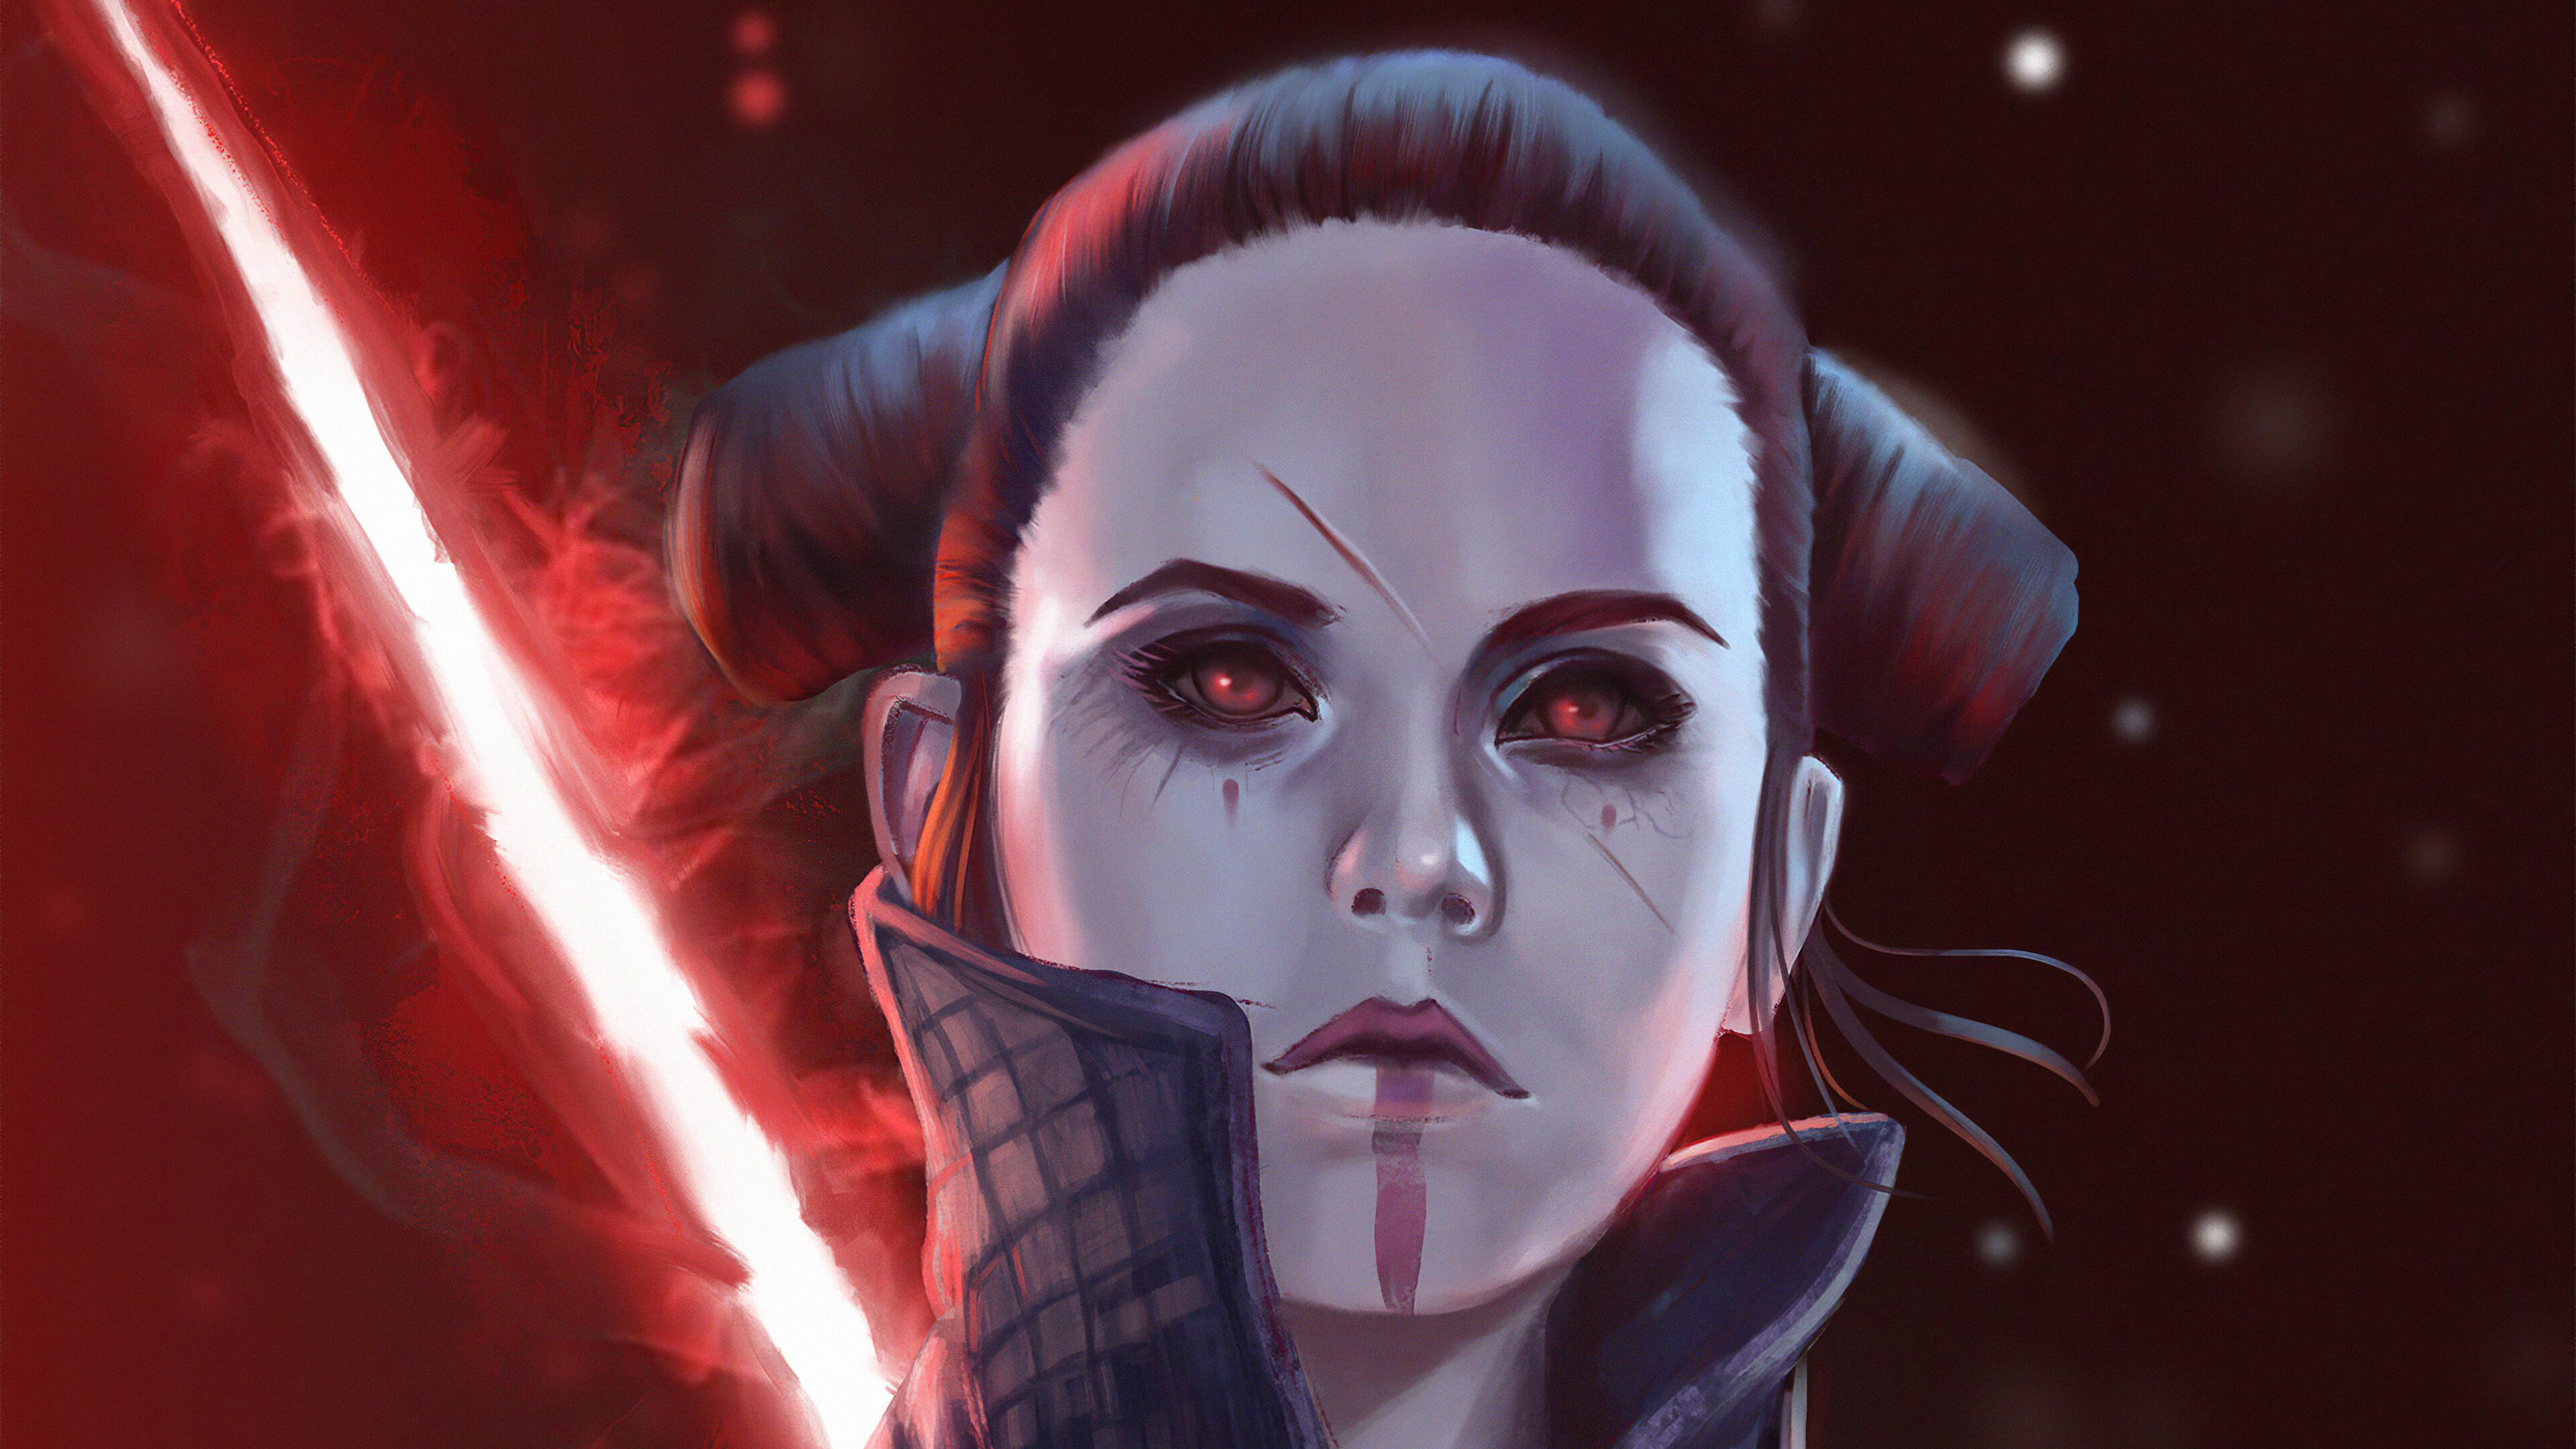 Rey from Star wars in the Dark Side Wallpaper 4k Ultra HD ID